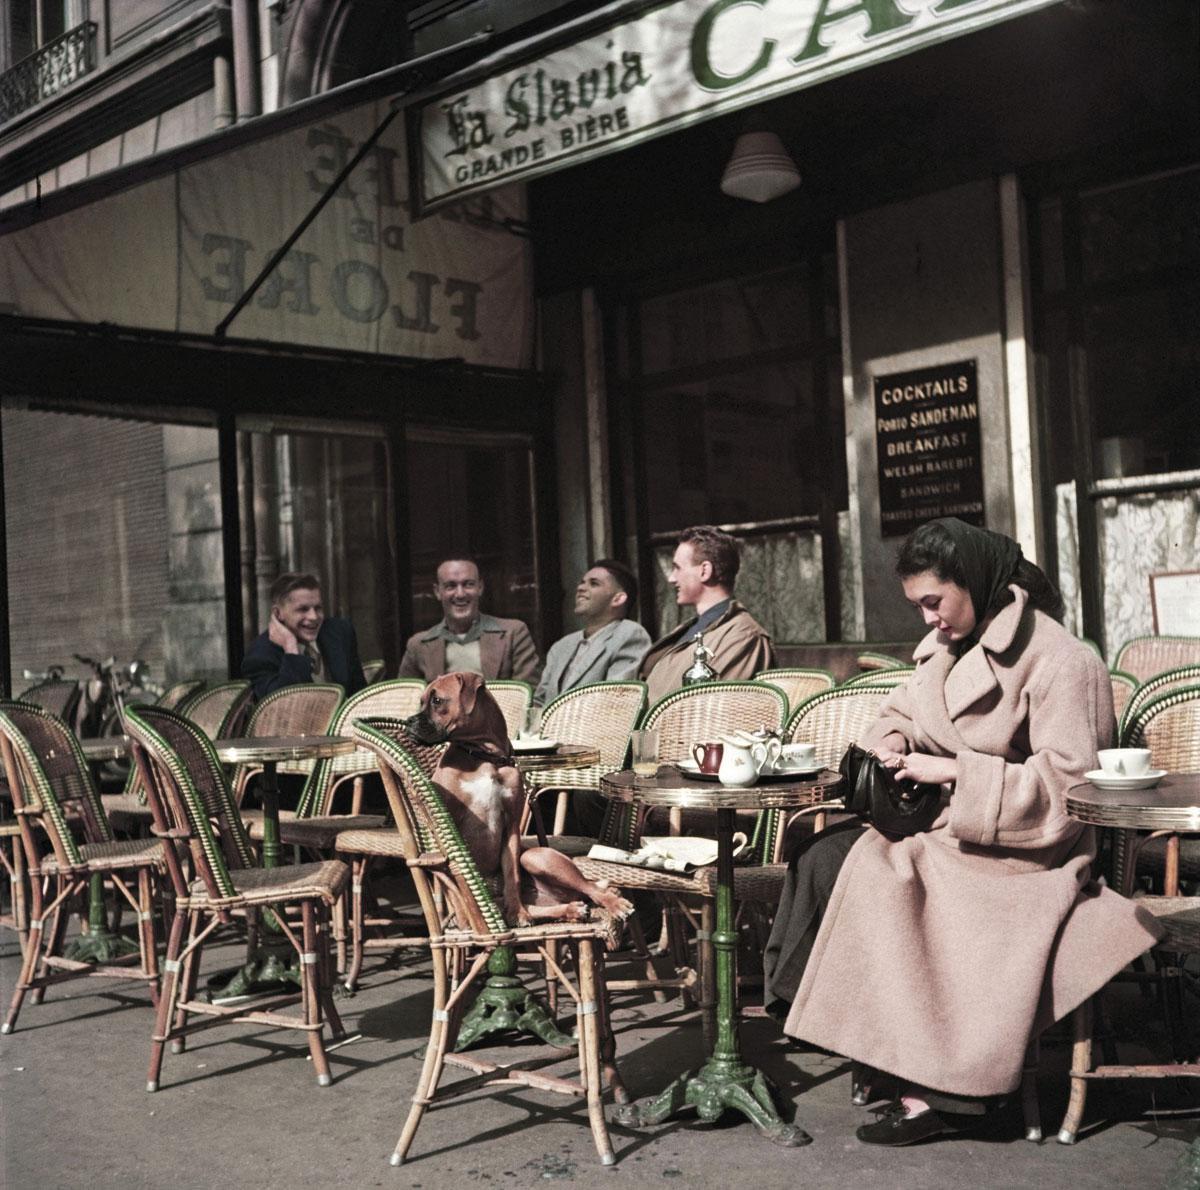 De rotan bistrostoel was in de vroege 20ste eeuw niet weg te denken uit Franse cafés. De bekende Hongaars-Amerikaanse fotograaf Robert Capa levert het bewijs met dit beeld van het bekende Café de Flore in Parijs.